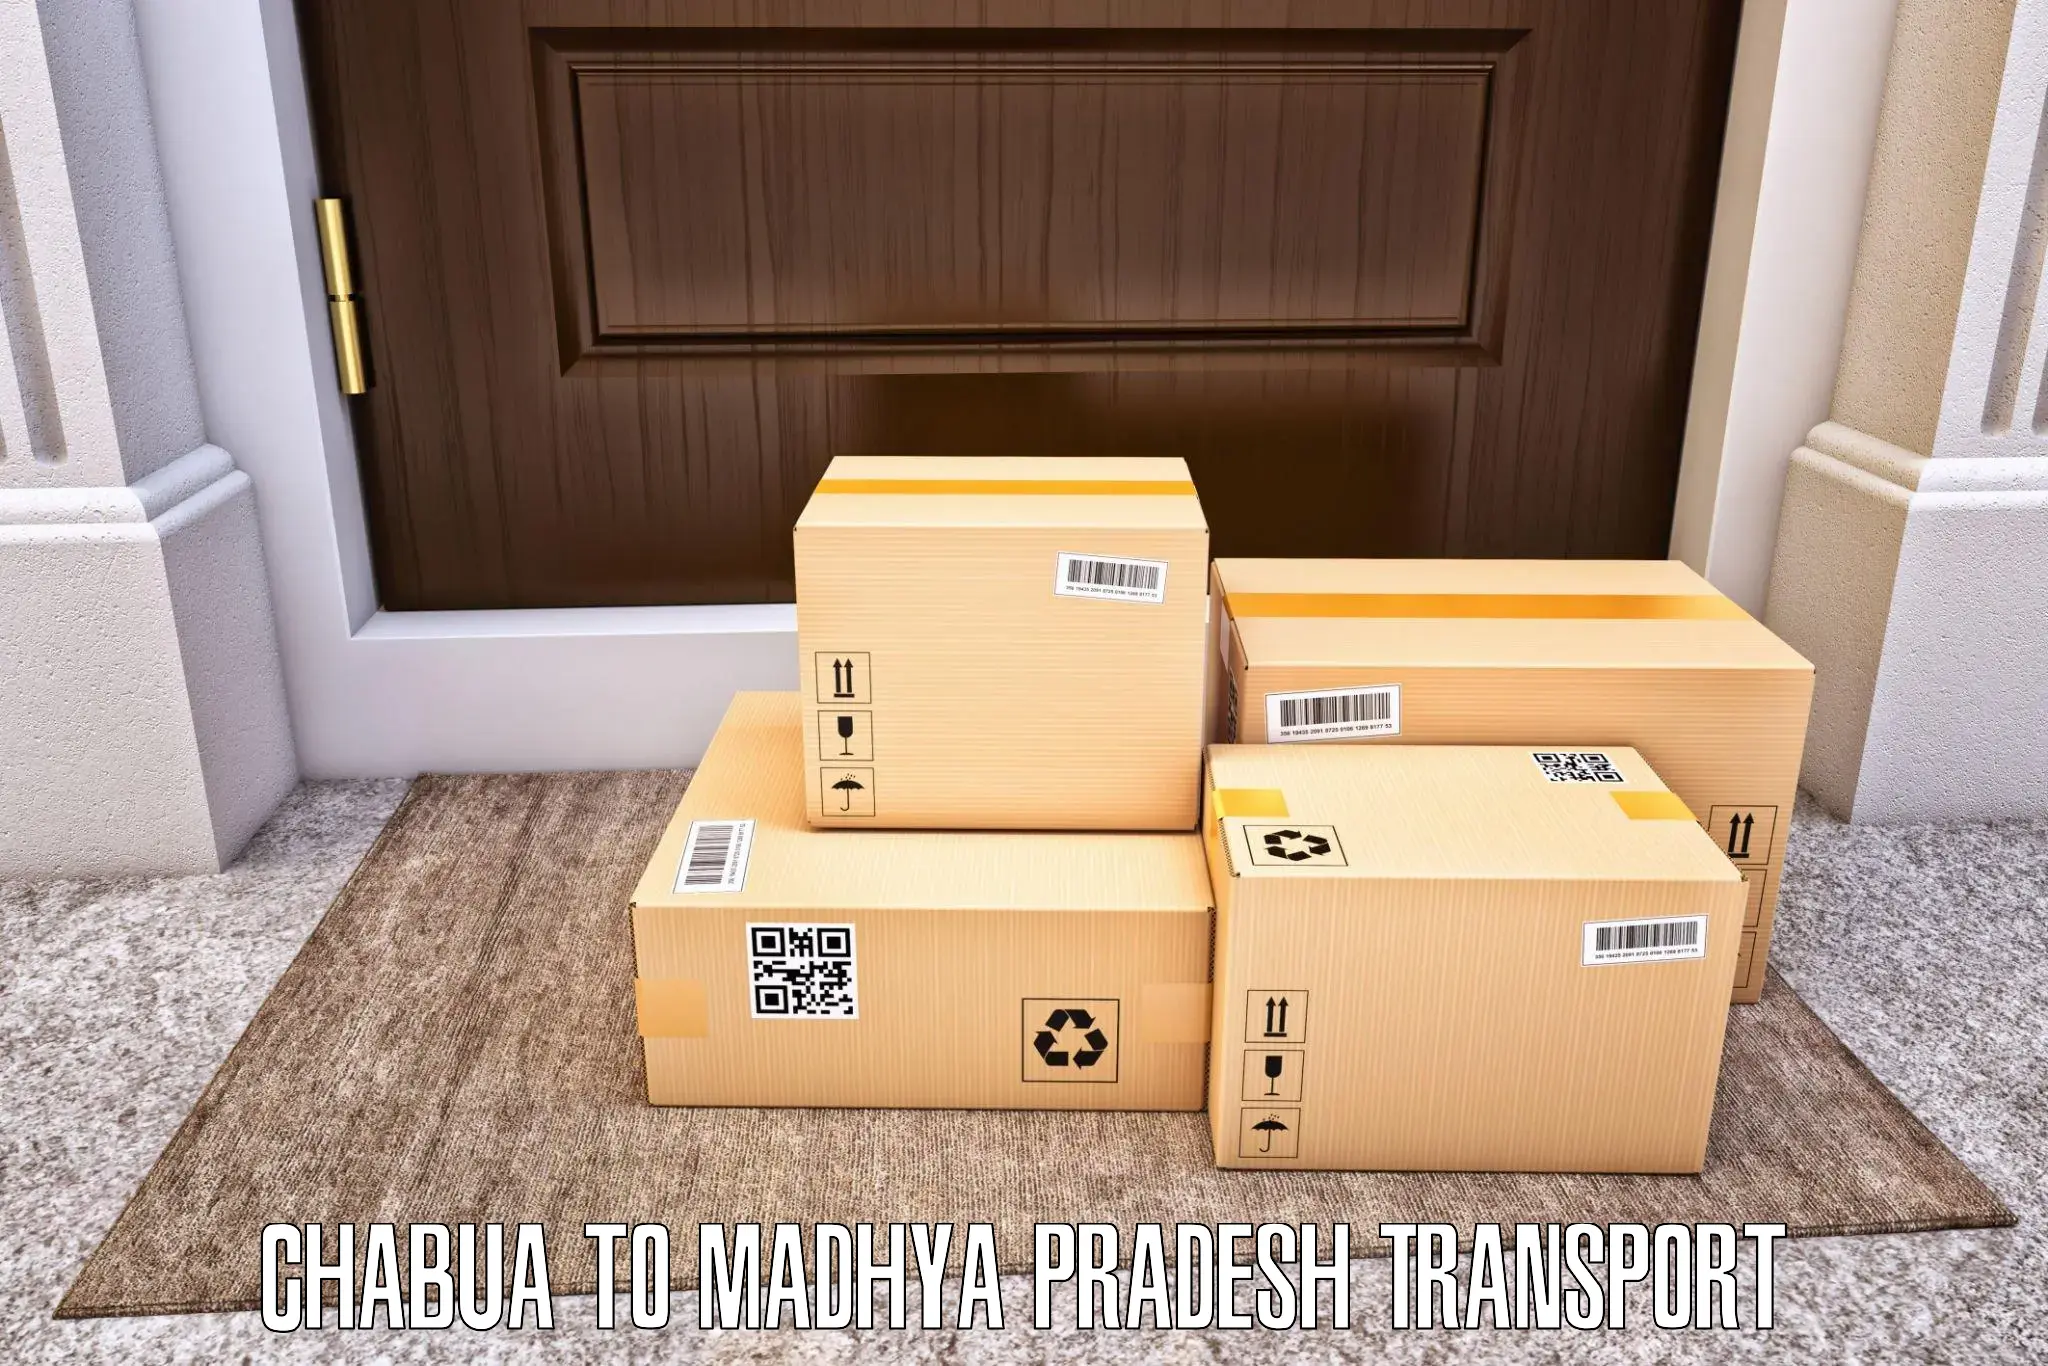 Scooty transport charges Chabua to Mandla